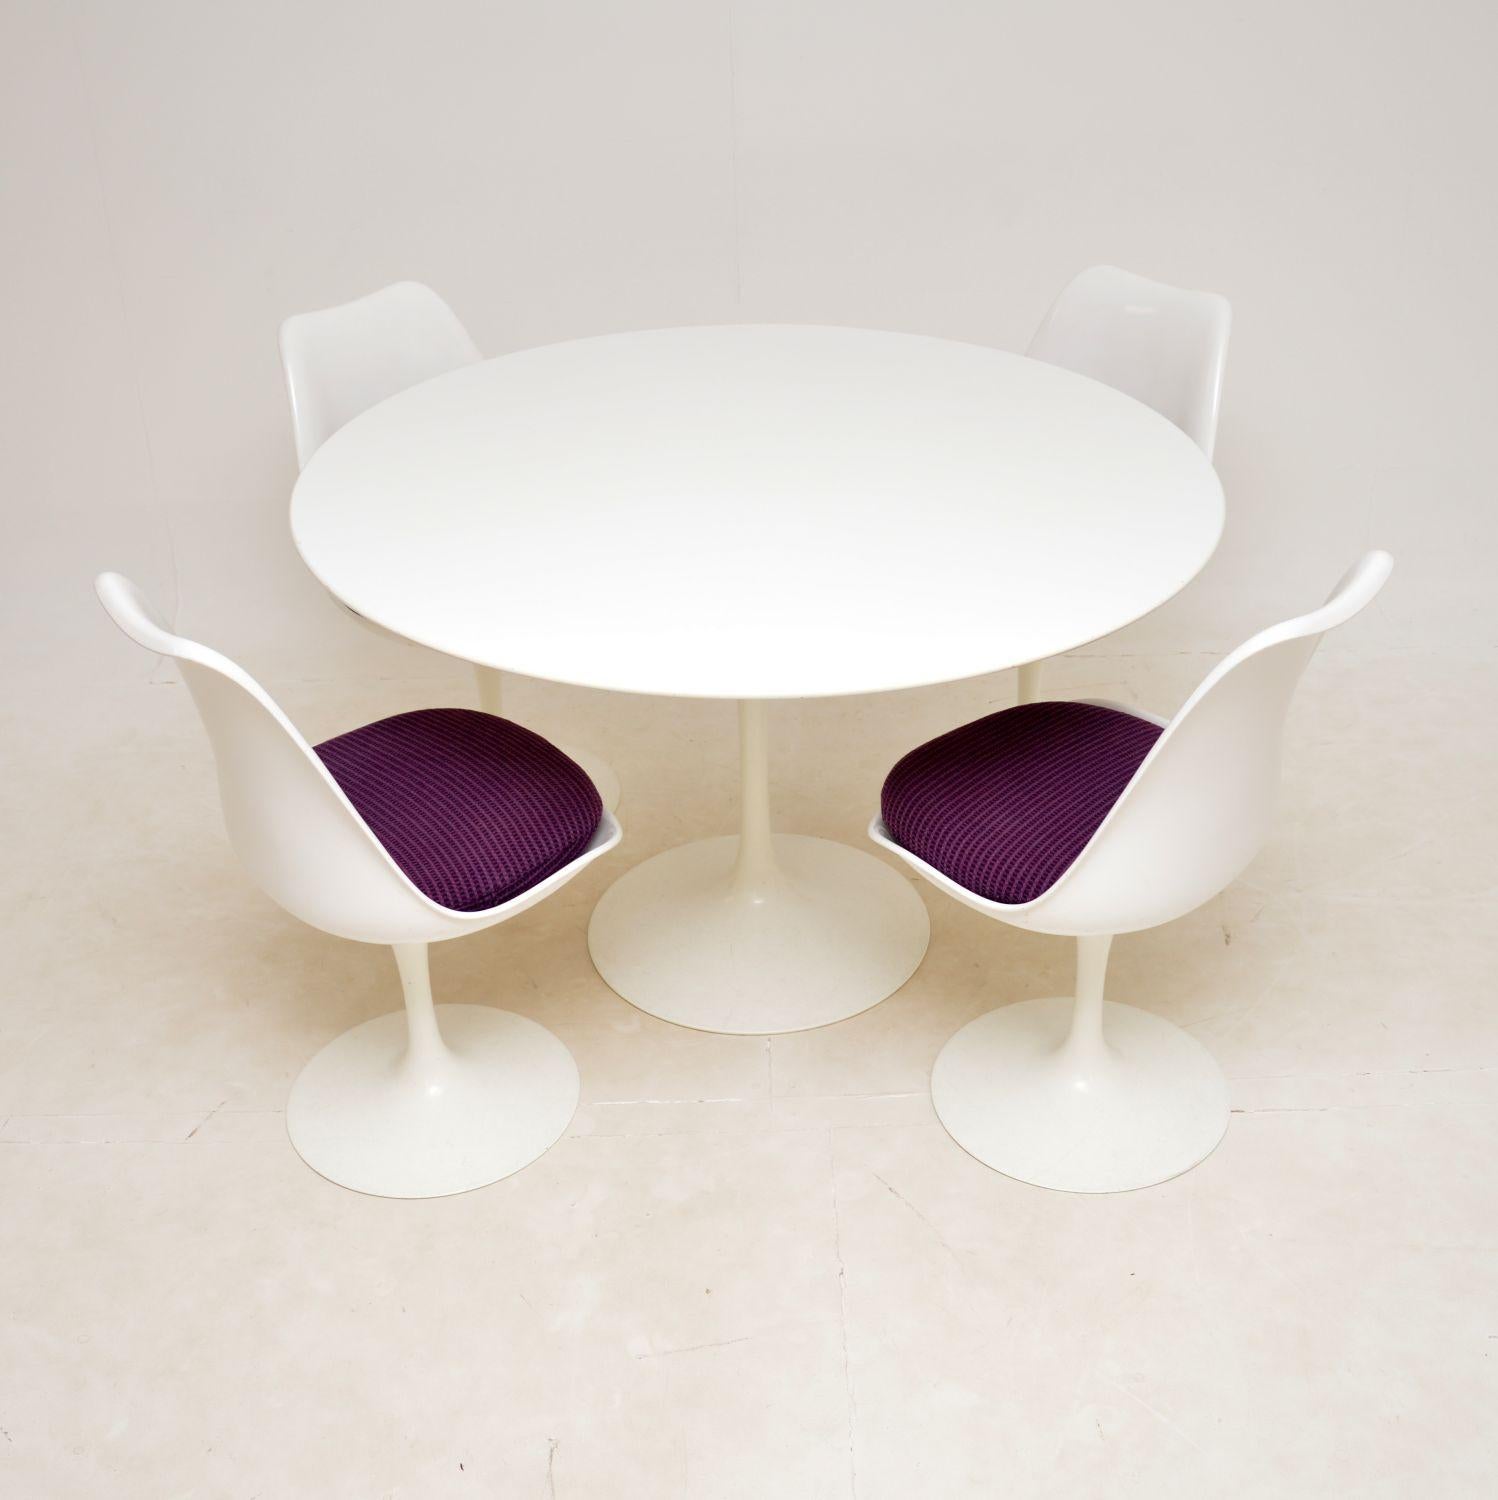 Dieser stilvolle und ikonische Tulpentisch und die vier dazu passenden Esszimmer-Drehstühle wurden in den 1950er Jahren von Eero Saarinen für Knoll entworfen.

Dieses Exemplar stammt aus der 50. Jubiläumsedition von Knoll aus den frühen 2000er